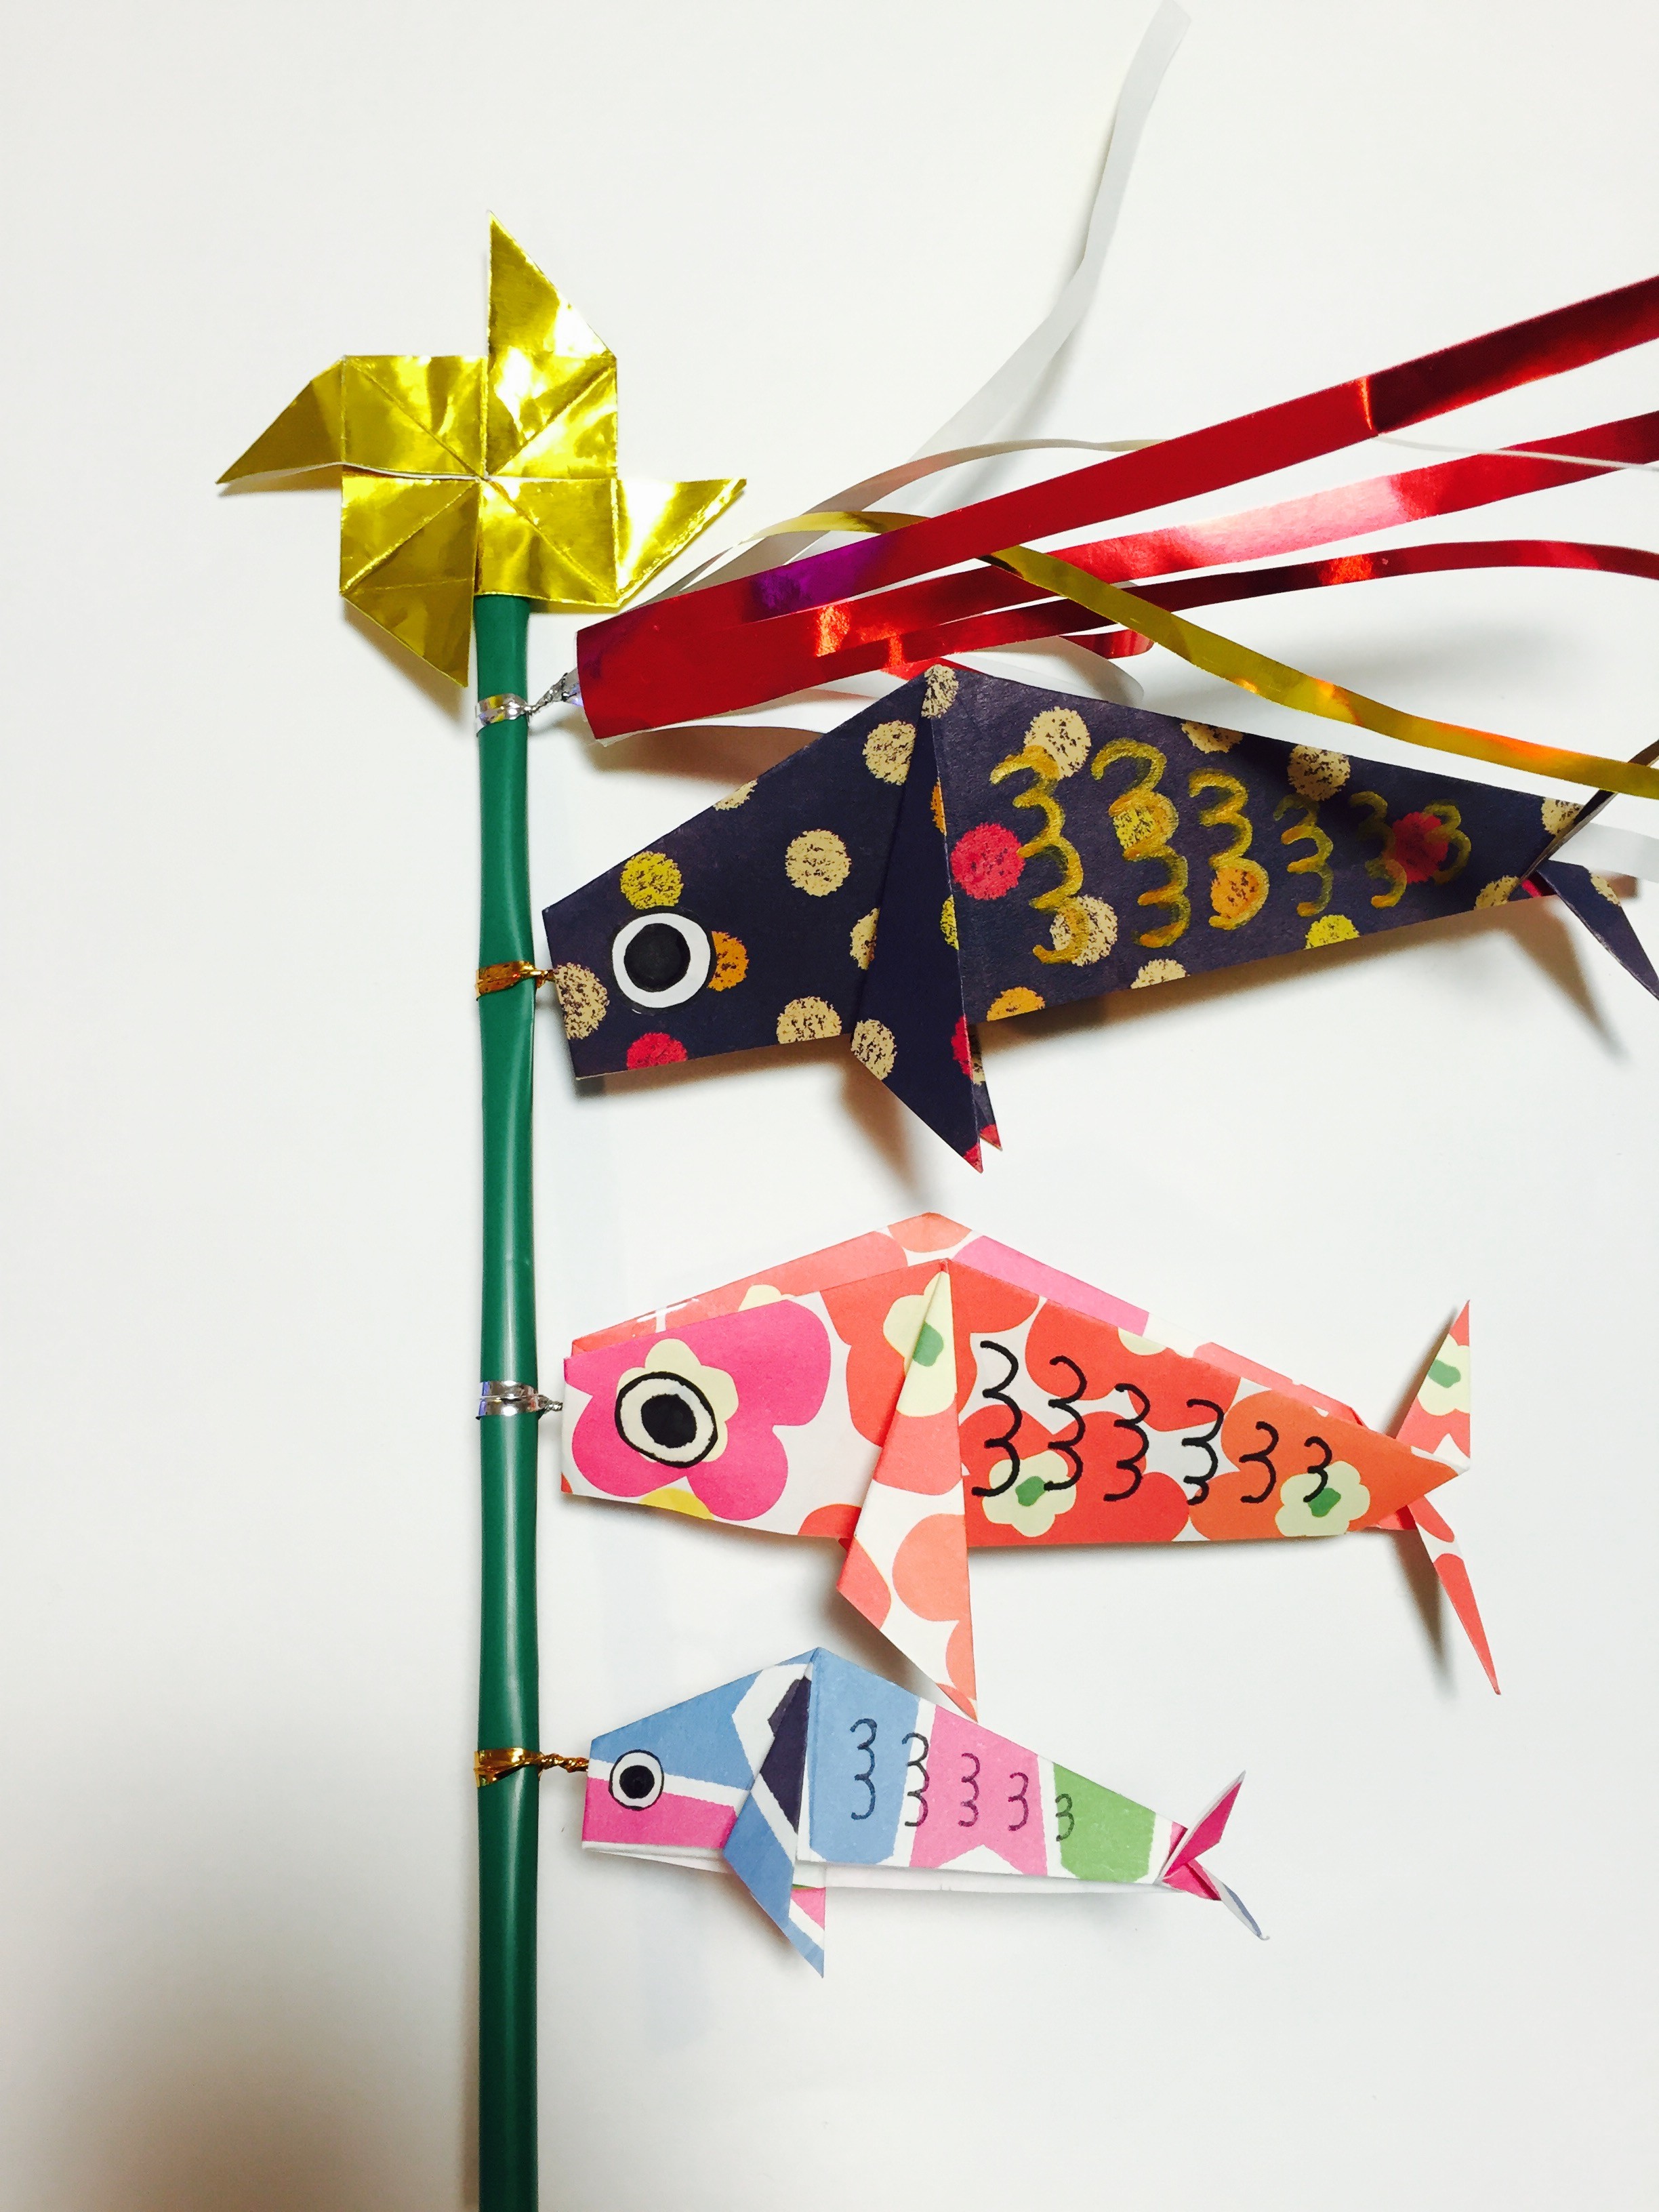 鯉のぼりと矢車の折り紙の折り方 家にある物で簡単に立体的な飾りに Amataniya